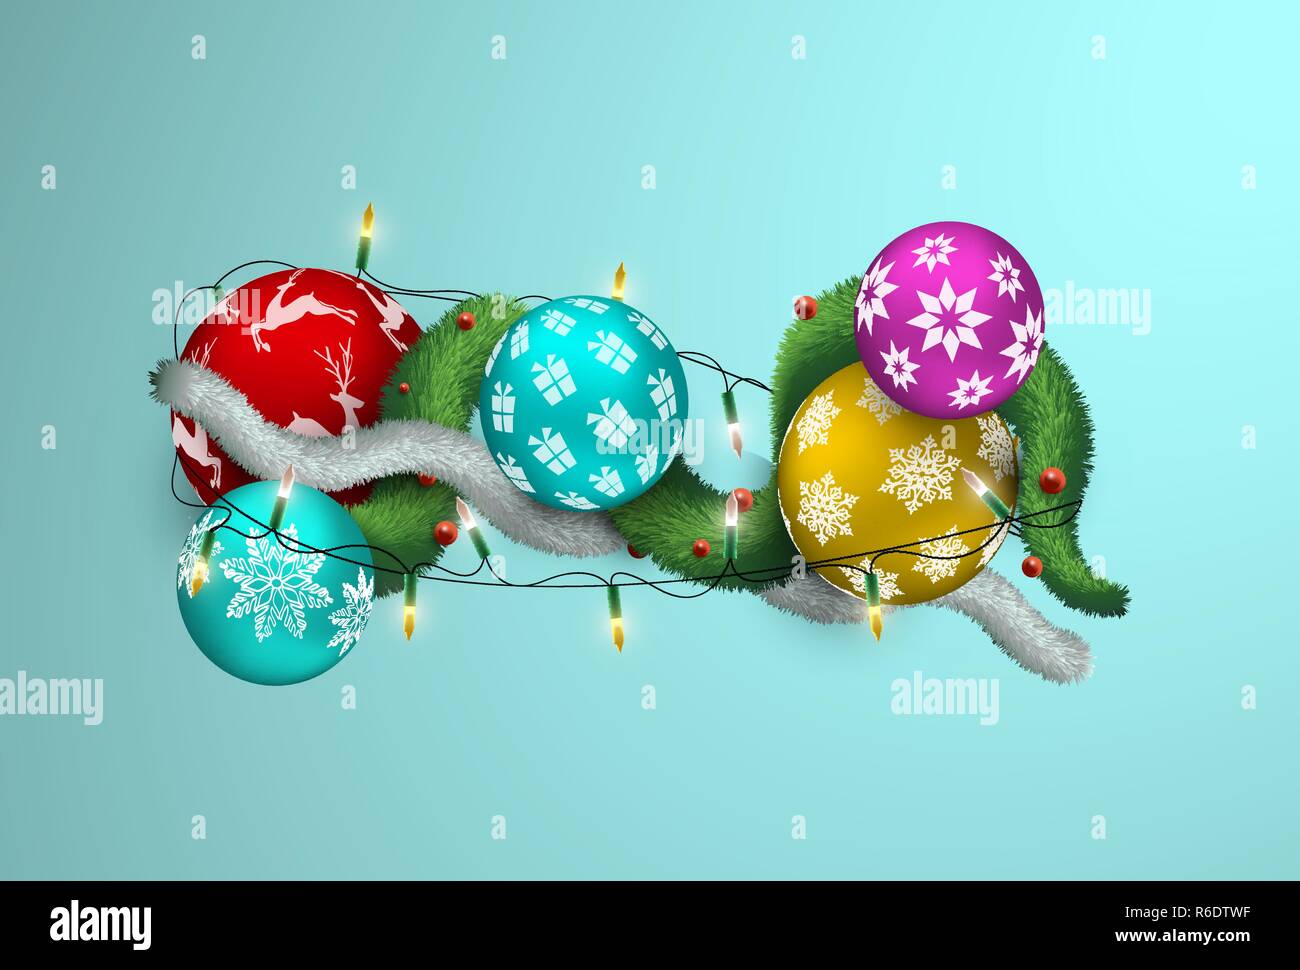 Frohe Weihnachten und guten Rutsch ins neue Jahr realistische 3D-Darstellung, bunte Xmas bauble Ornamente mit Lichtern und Kiefer Girlande. Mehrfarbige Urlaub b Stock Vektor